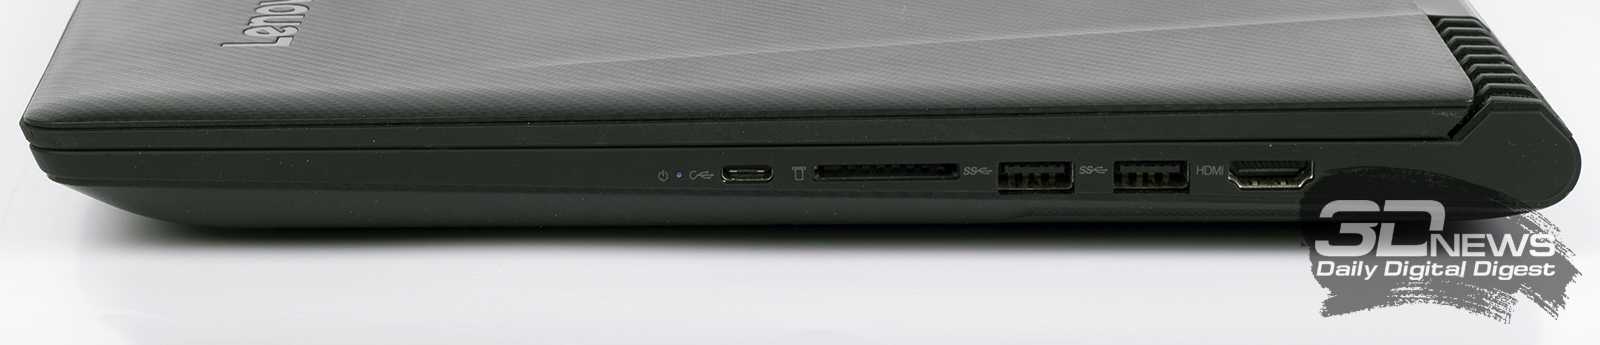 Ноутбук Lenovo Legion Y520-15 (80YY0039PB) - подробные характеристики обзоры видео фото Цены в интернет-магазинах где можно купить ноутбук Lenovo Legion Y520-15 (80YY0039PB)